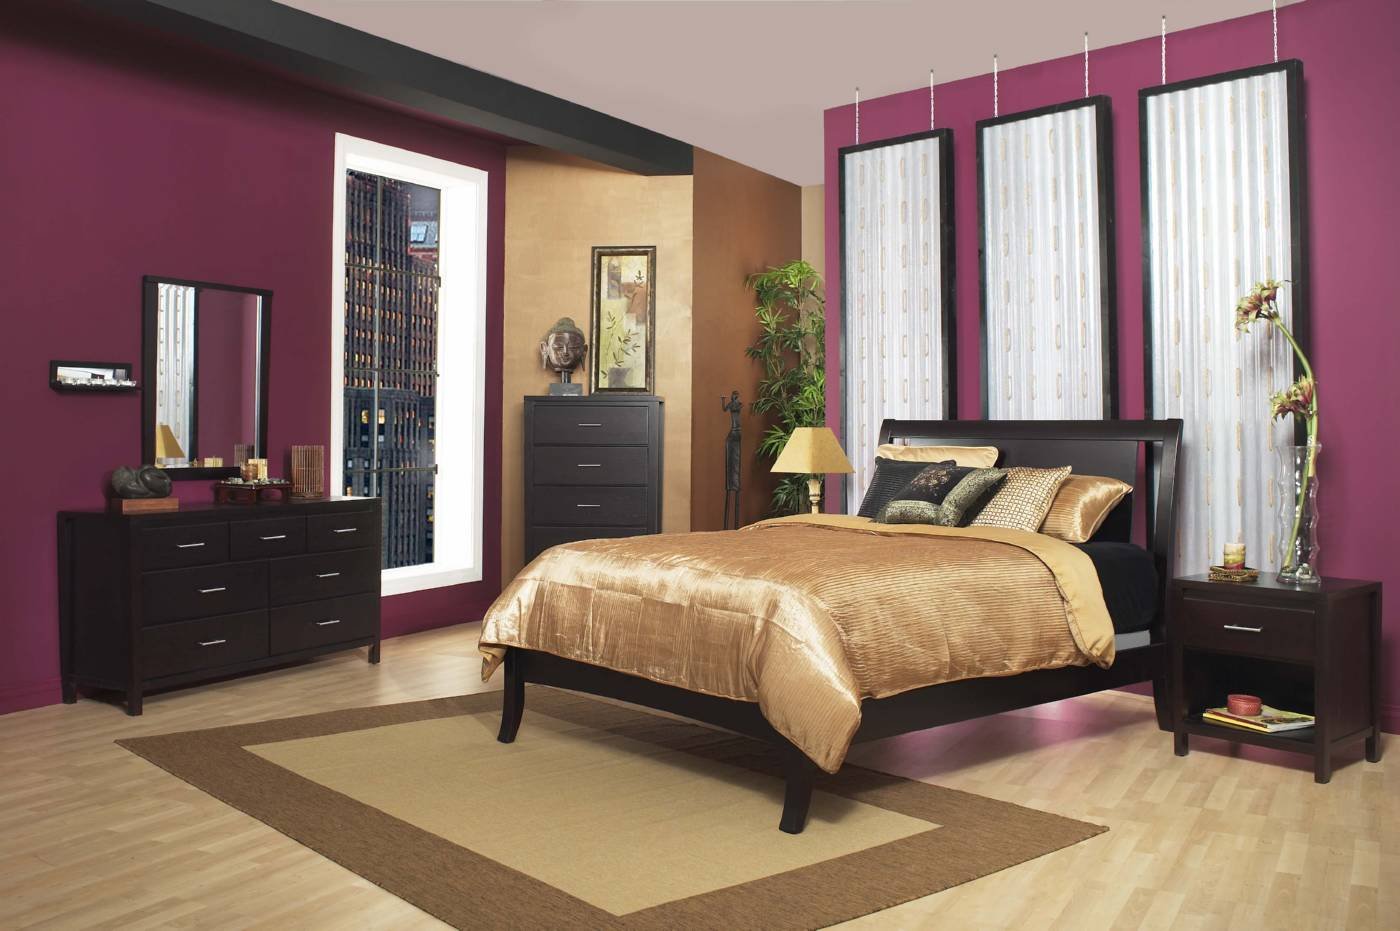 Какого цвета должна быть мебель. Рыжая мебель в интерьере. Мебель цвета махагон в интерьере. Мебель для спальни. Спальня в цвете венге.